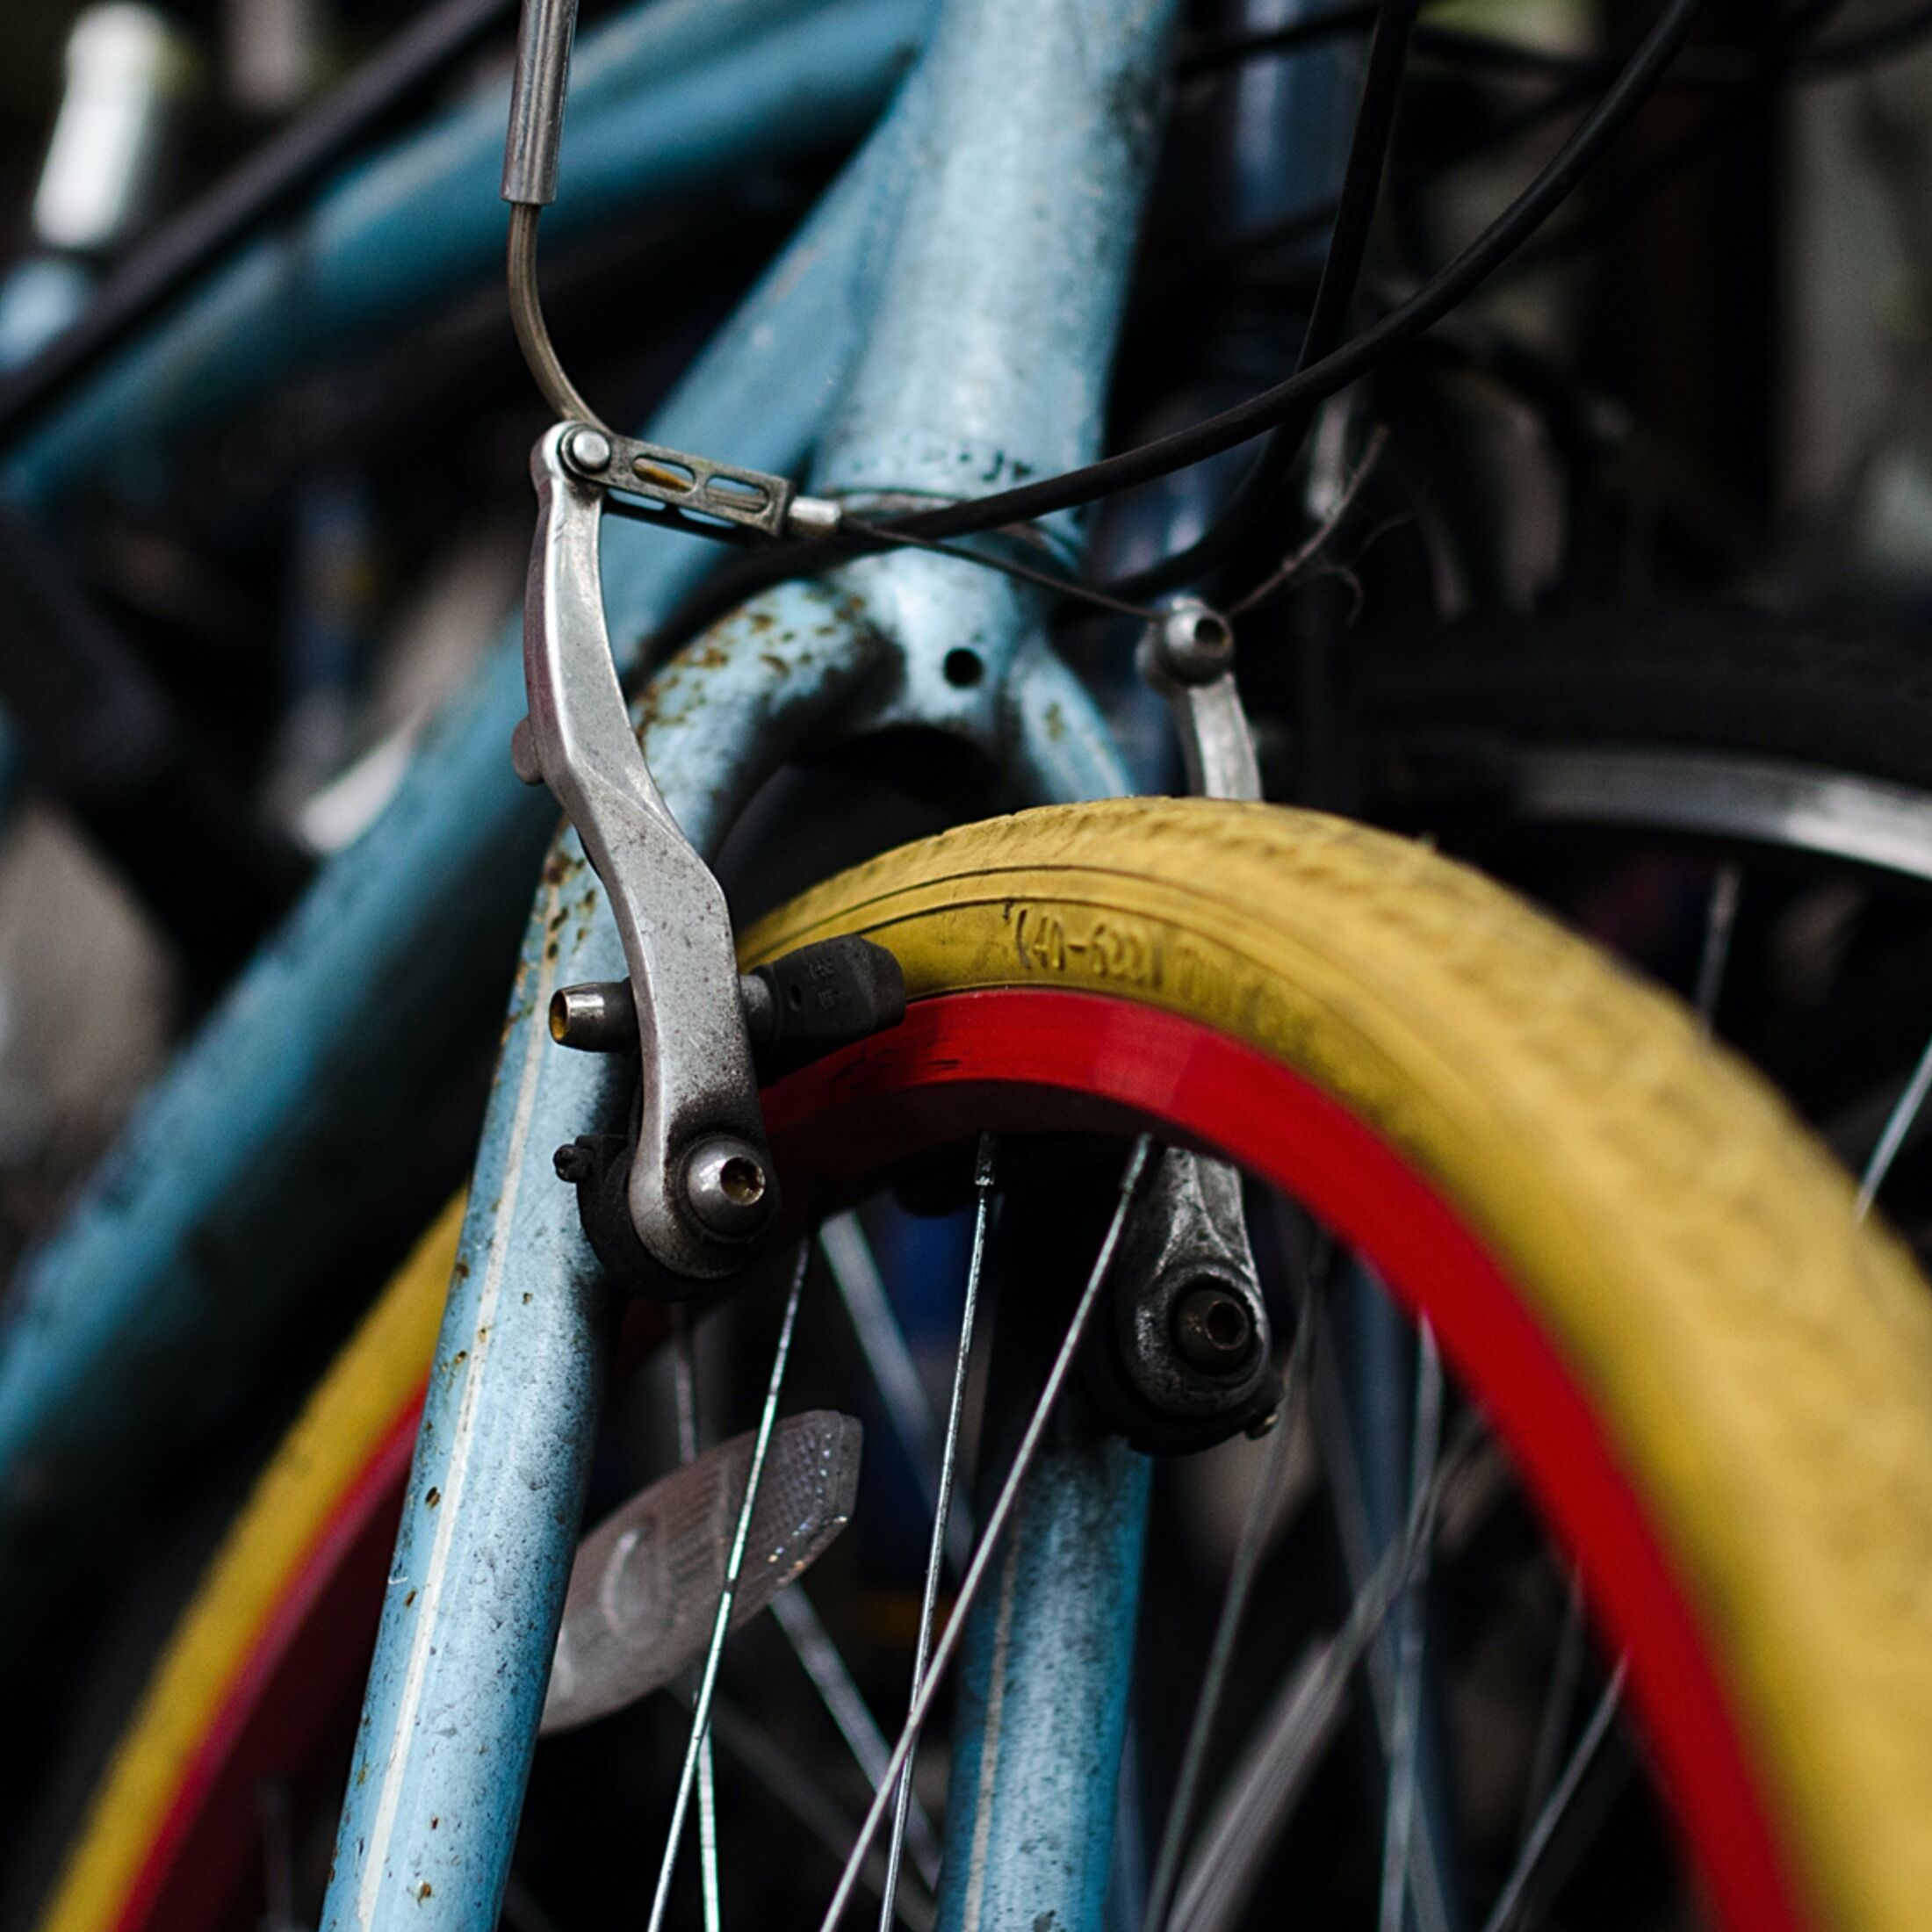 Fahrrad: 5 Tipps gegen quietschende Scheibenbremsen am MTB